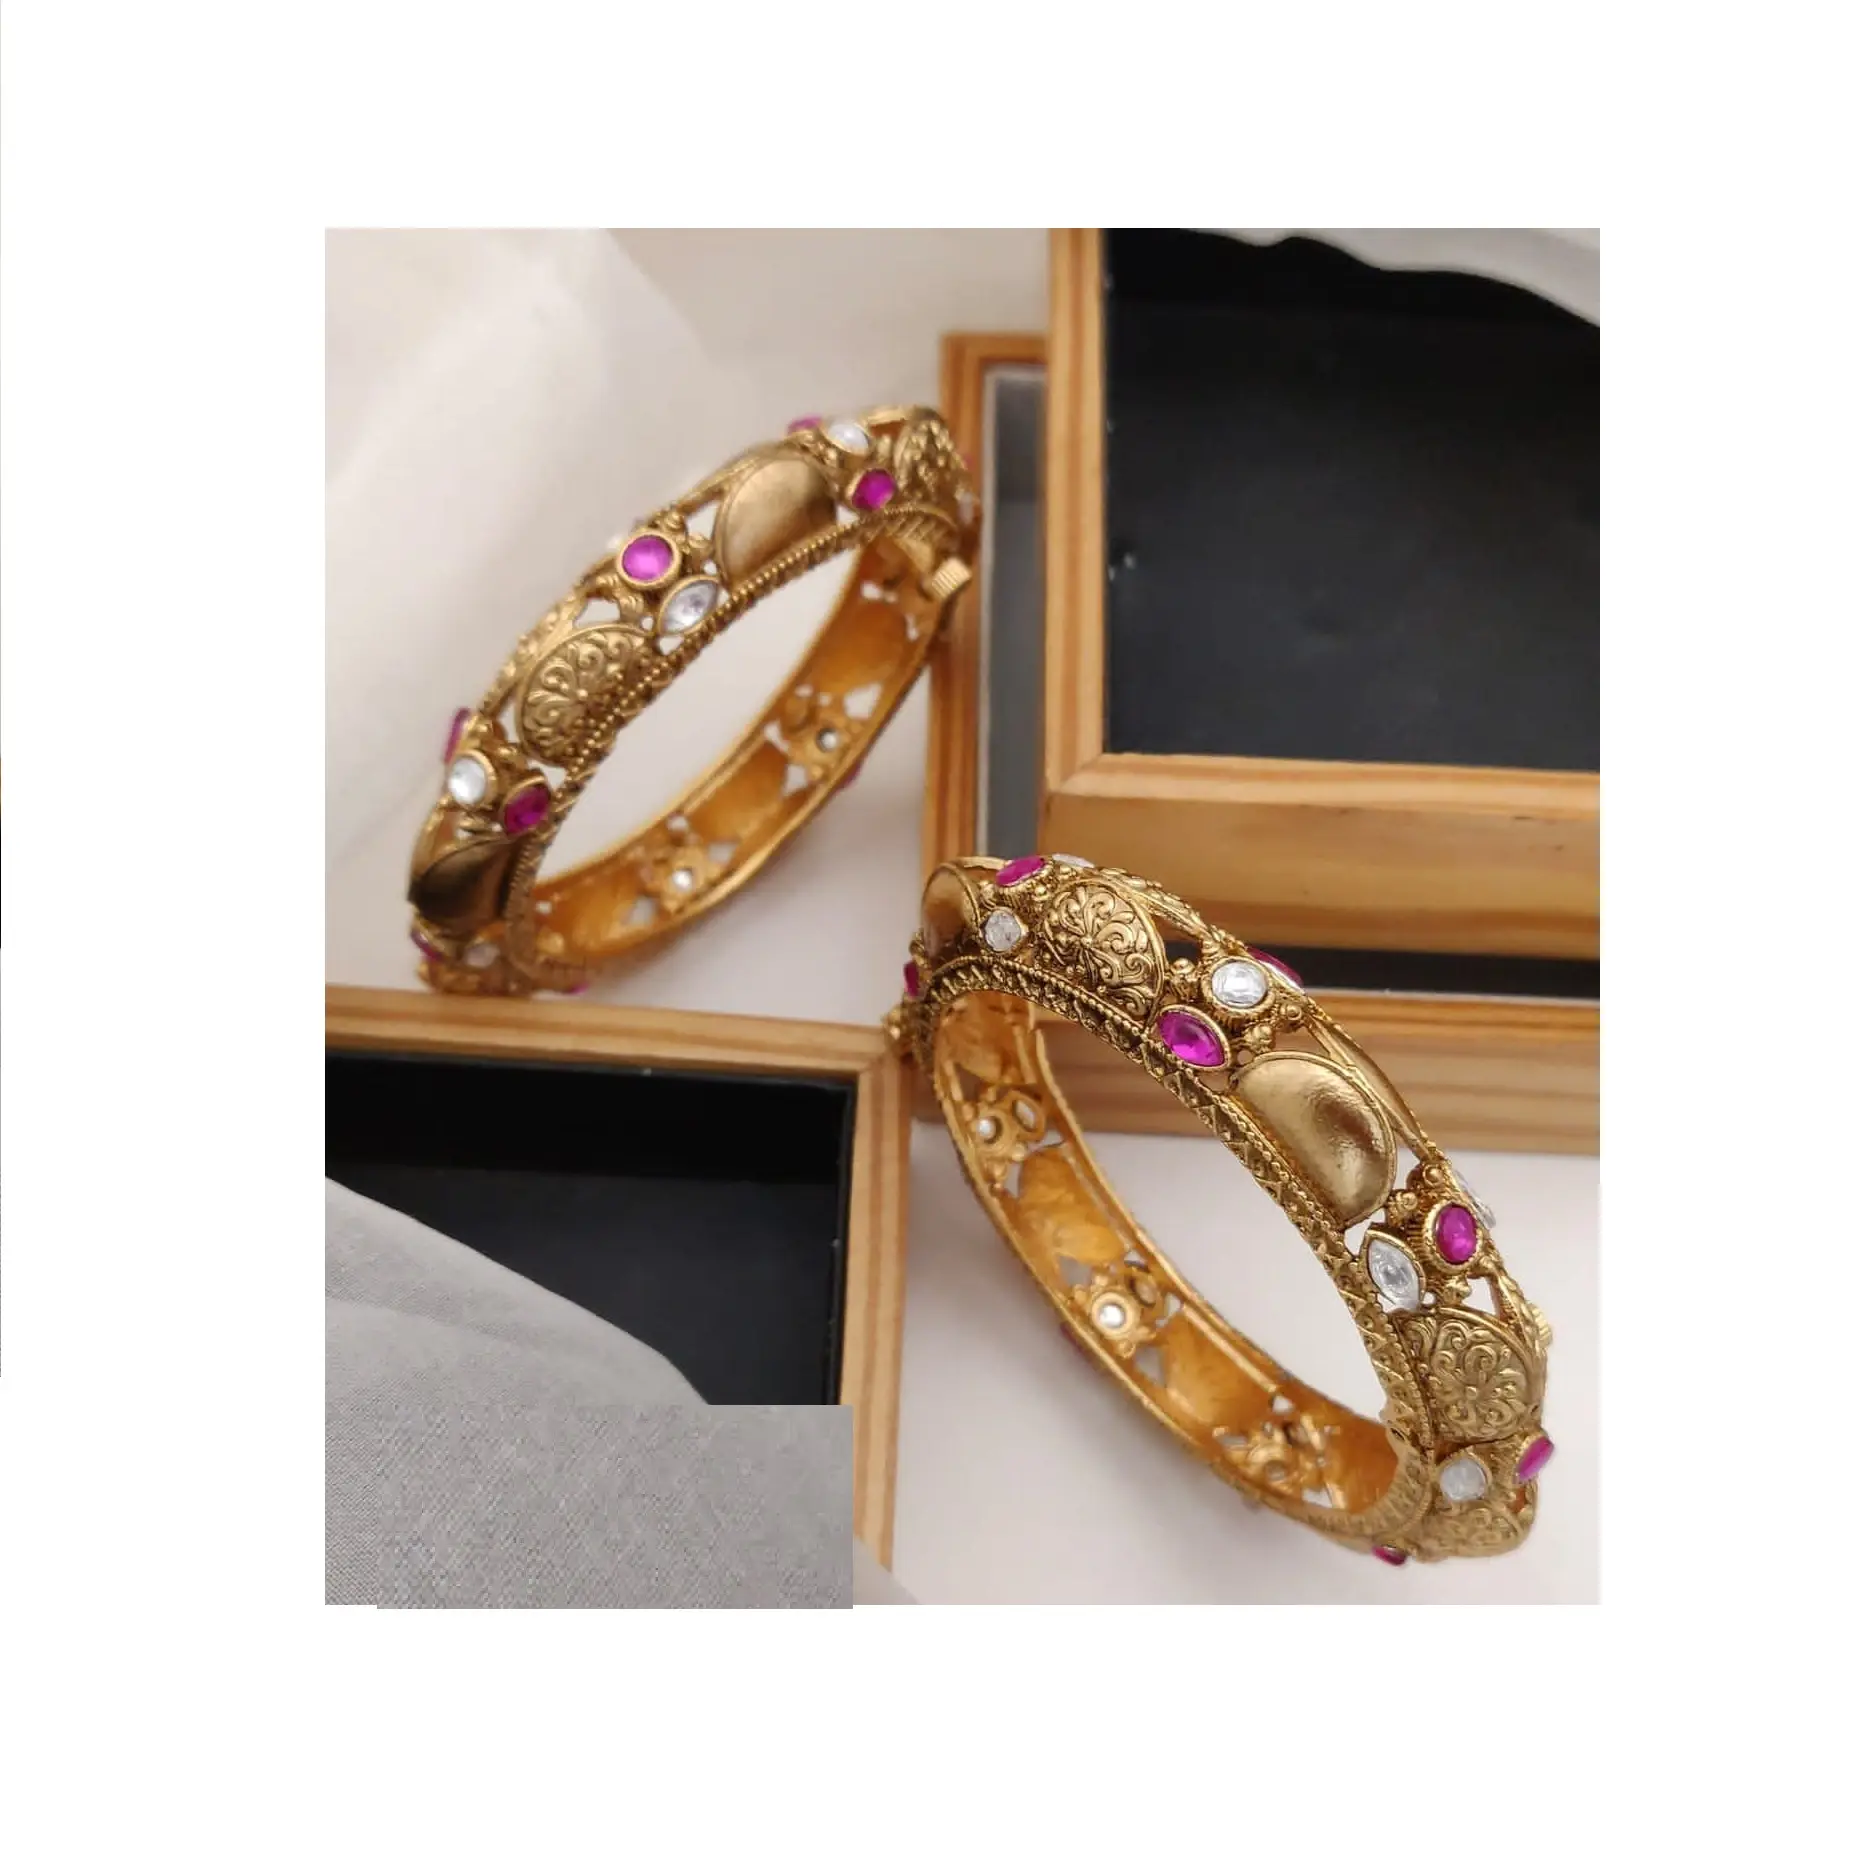 Koleksi baru perhiasan pengantin Gelang Bangle dengan desain mewah gelang emas dari ekspor India